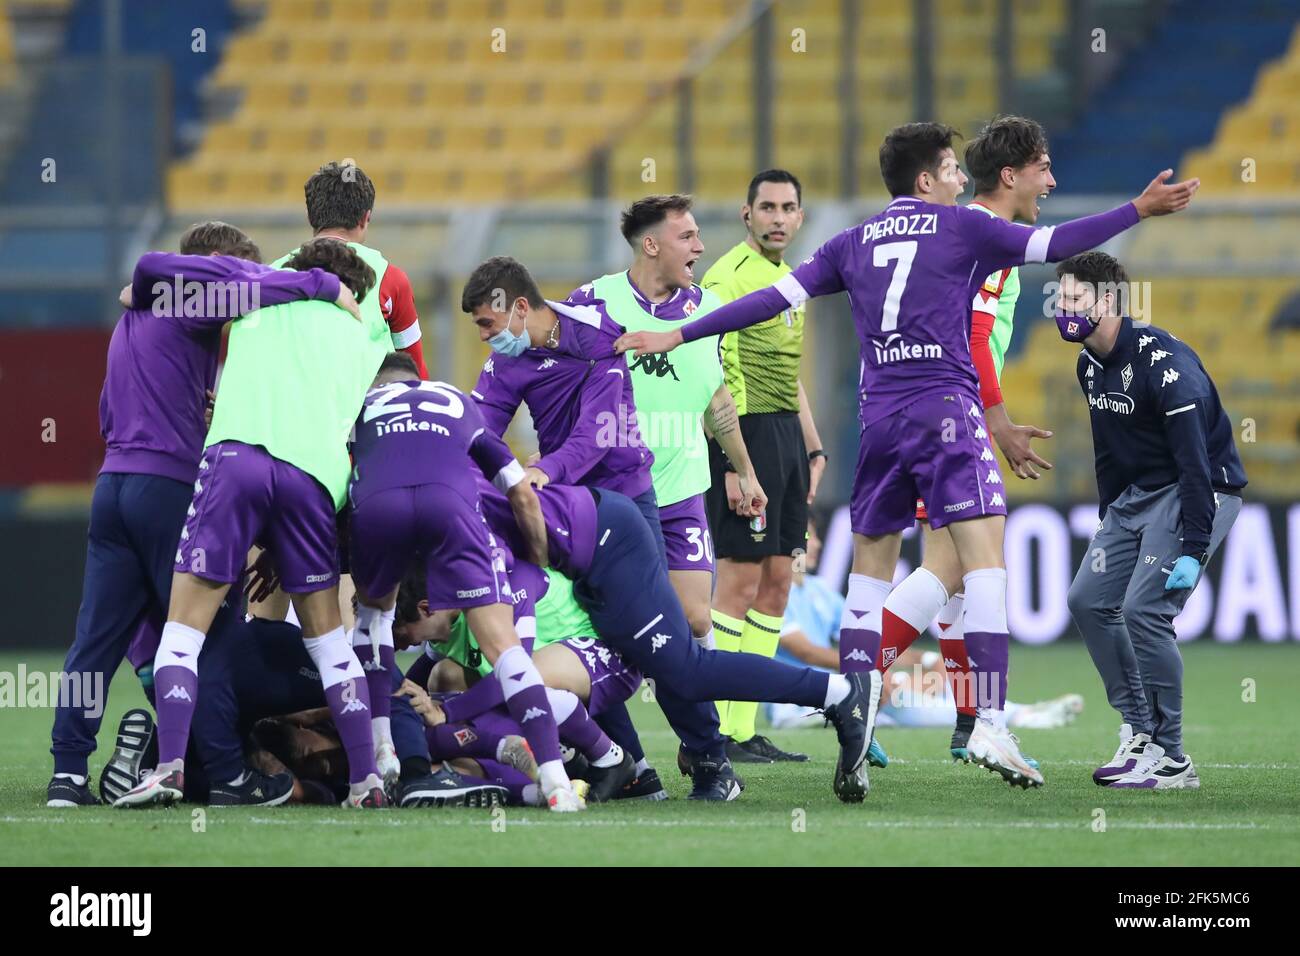 Football, Fiorentina win Coppa Italia Primave